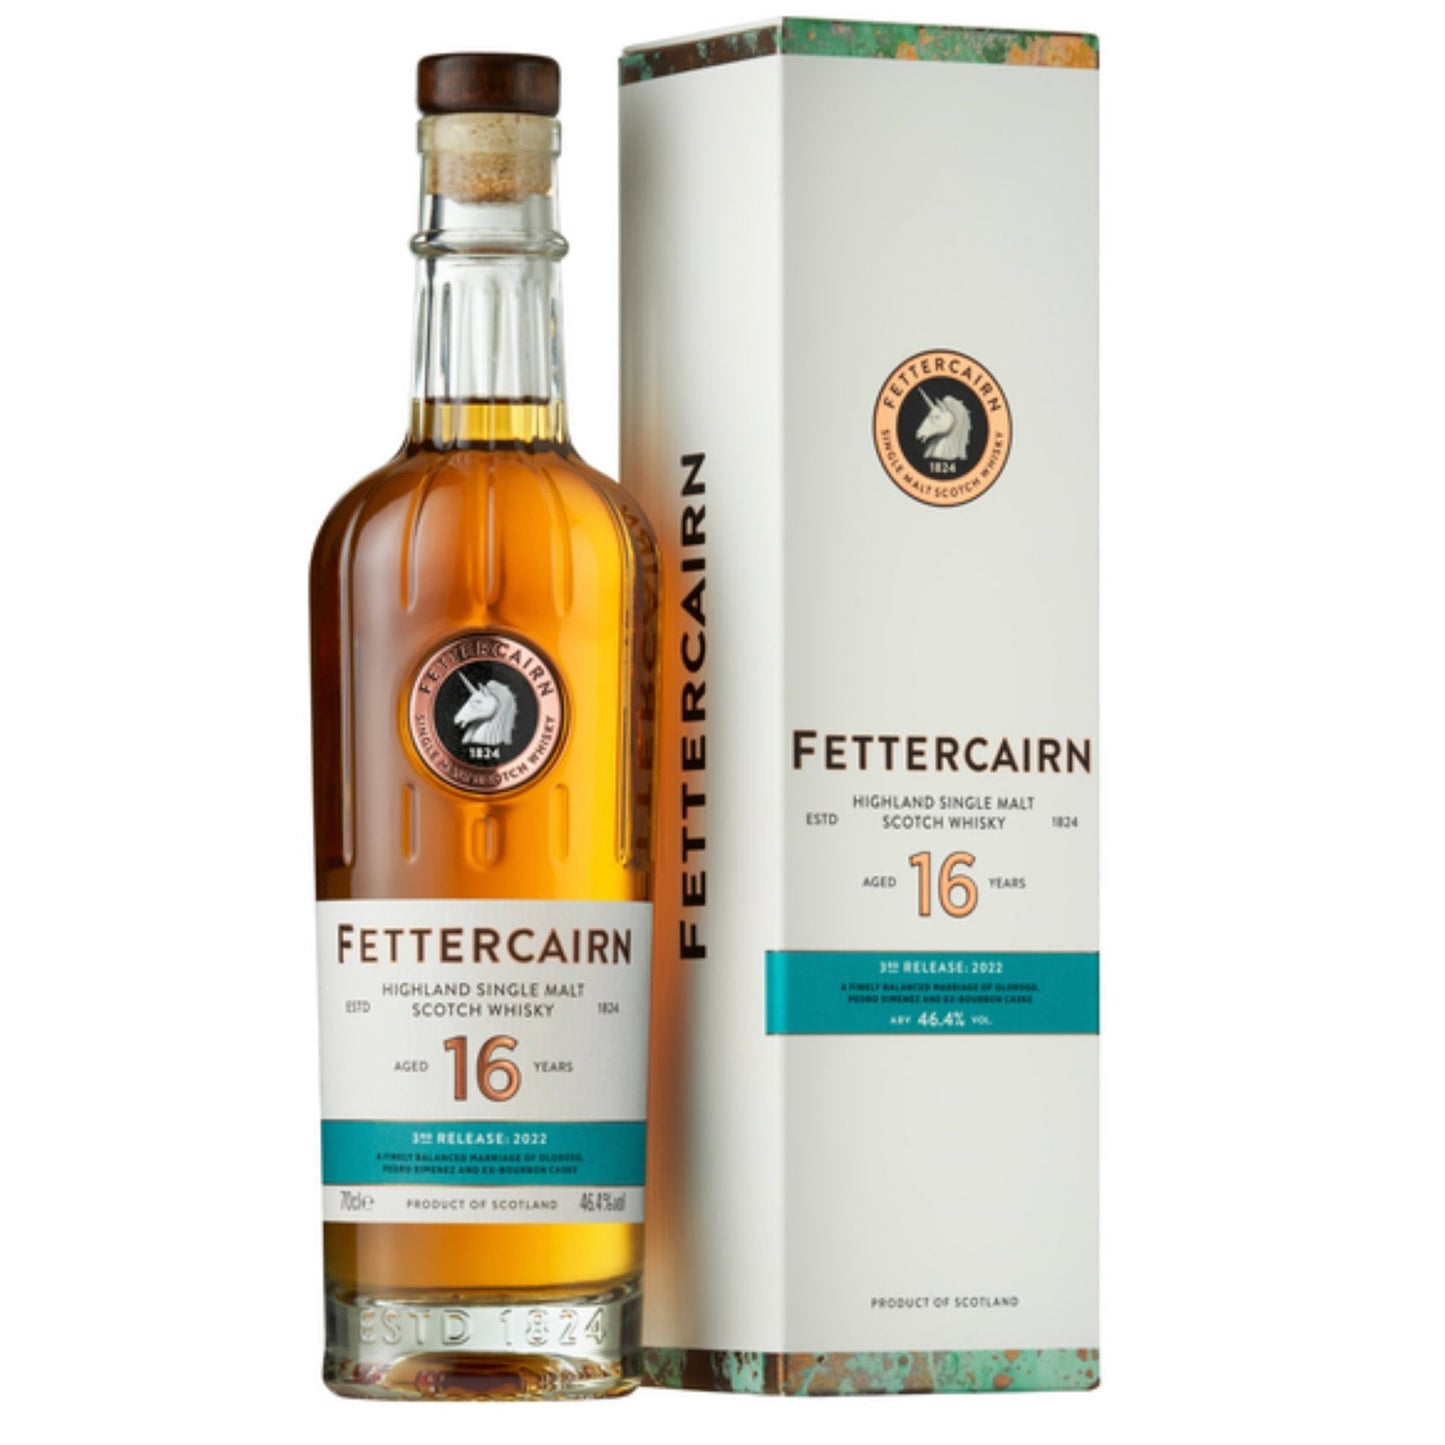 Fettercairn 16 Year Old - 3rd Release 2022 - Single Malt Scotch Whisky-Single Malt Scotch Whisky-5013967019249-Fountainhall Wines